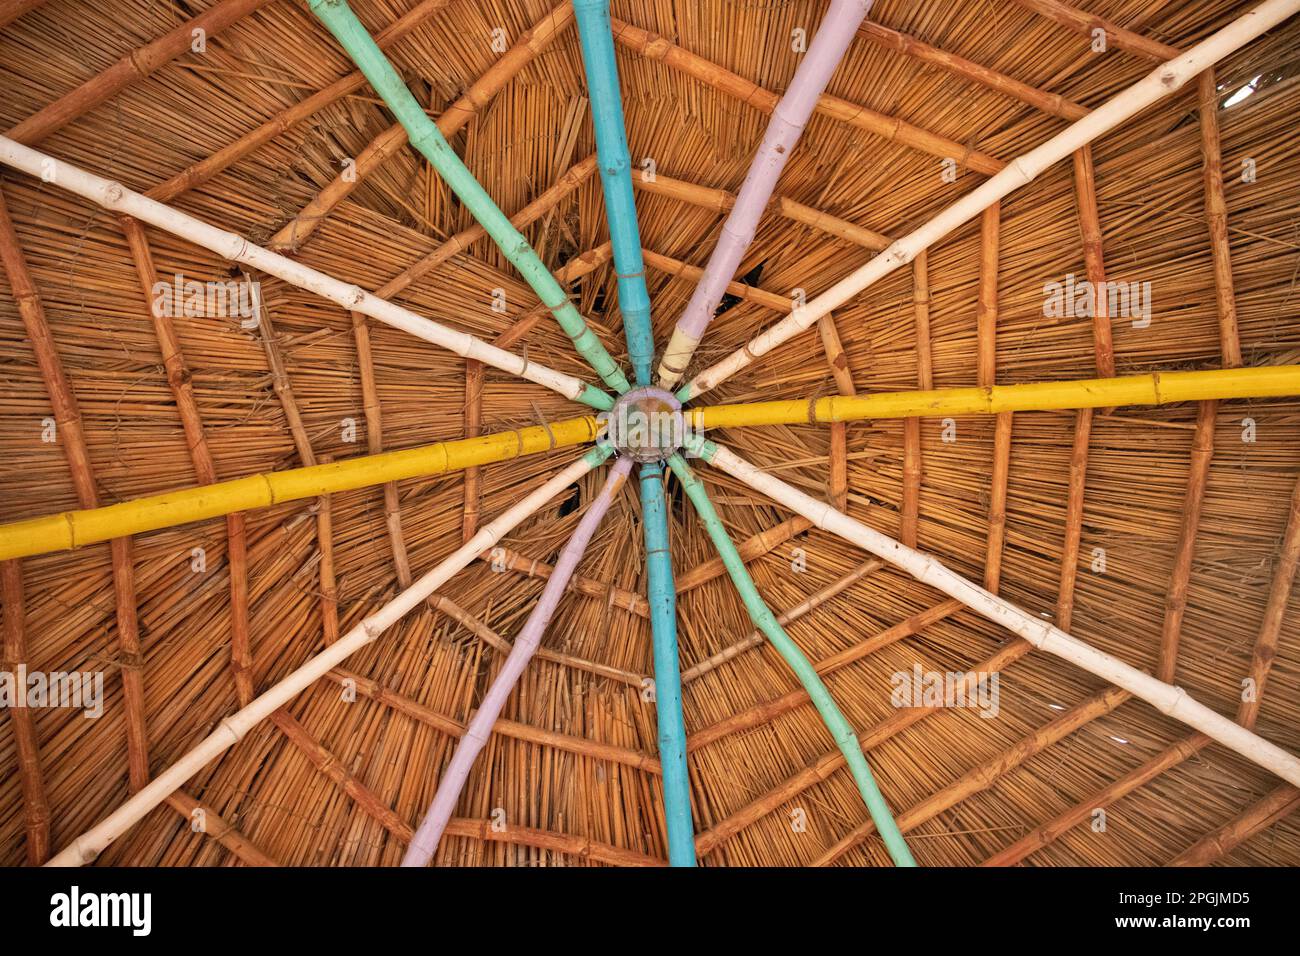 Cabane en bambou ressemblant à la toile d'araignée Banque D'Images